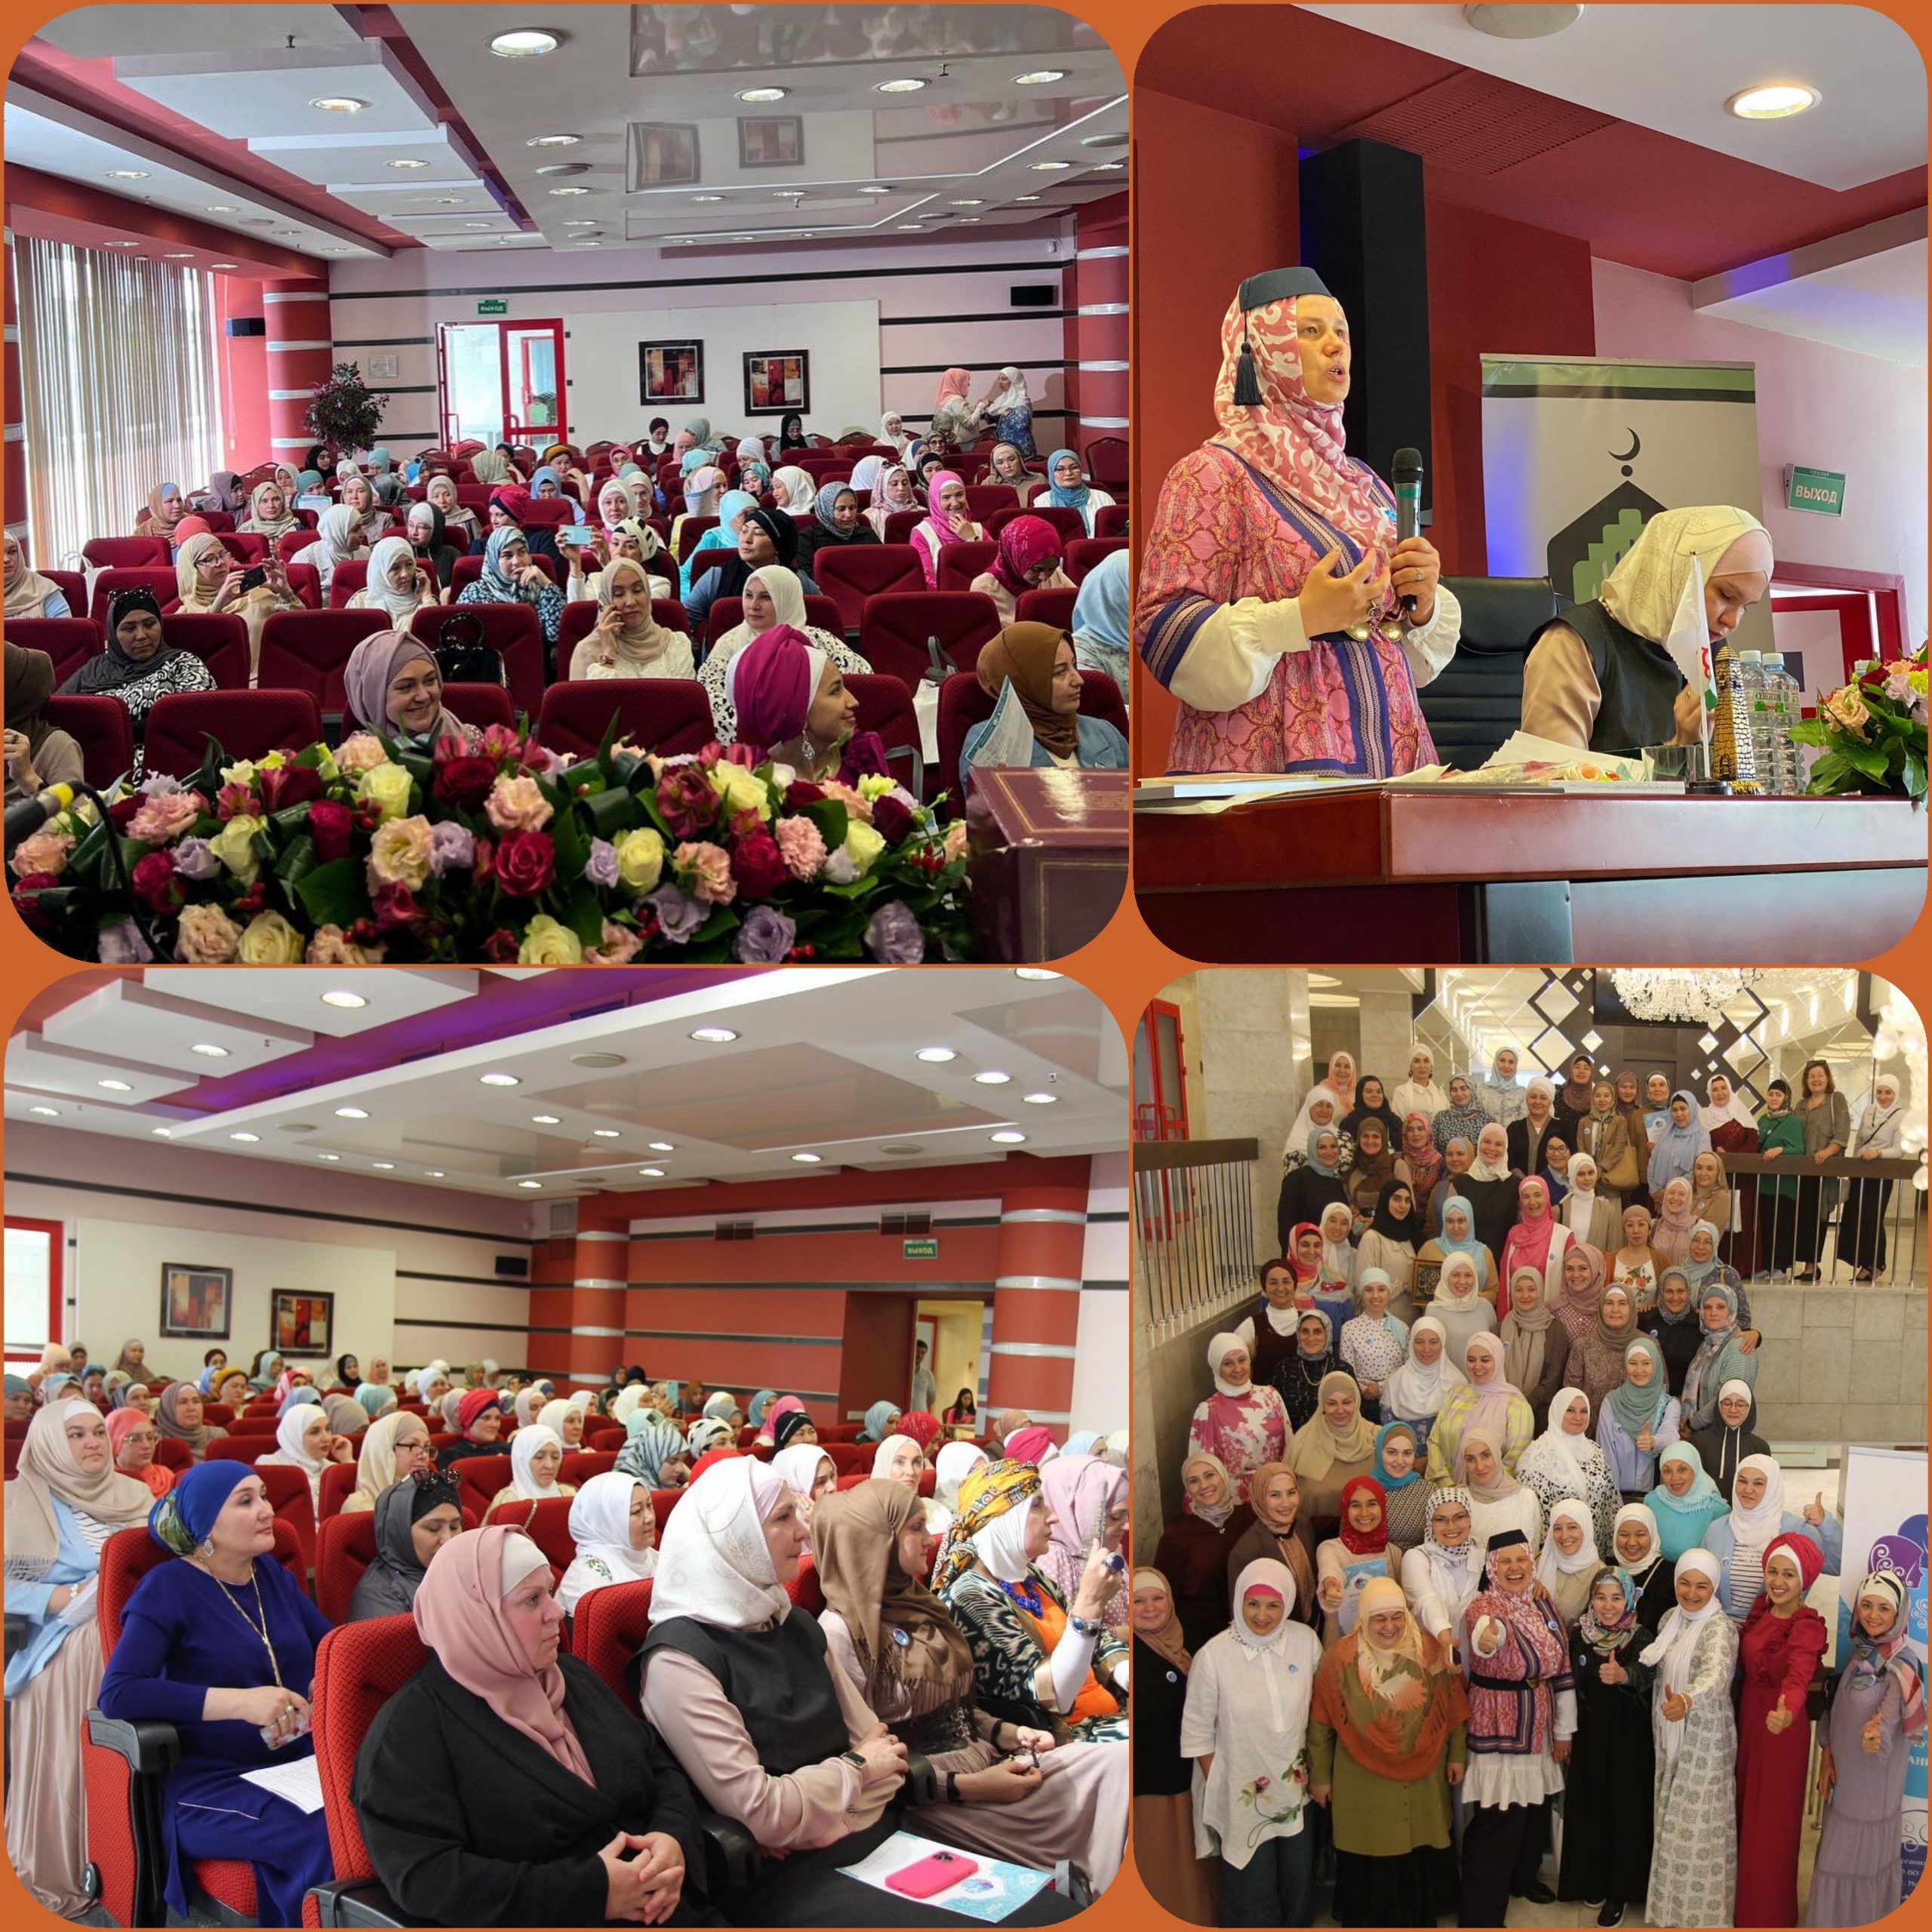 عُقد المؤتمر السنوي العاشر، للمنظمات النسائية المسلمة، لعموم روسيا الاتحادية، في العاصمة موسكو، خلال الفترة: 22-24 من شهر يوليو الجاري